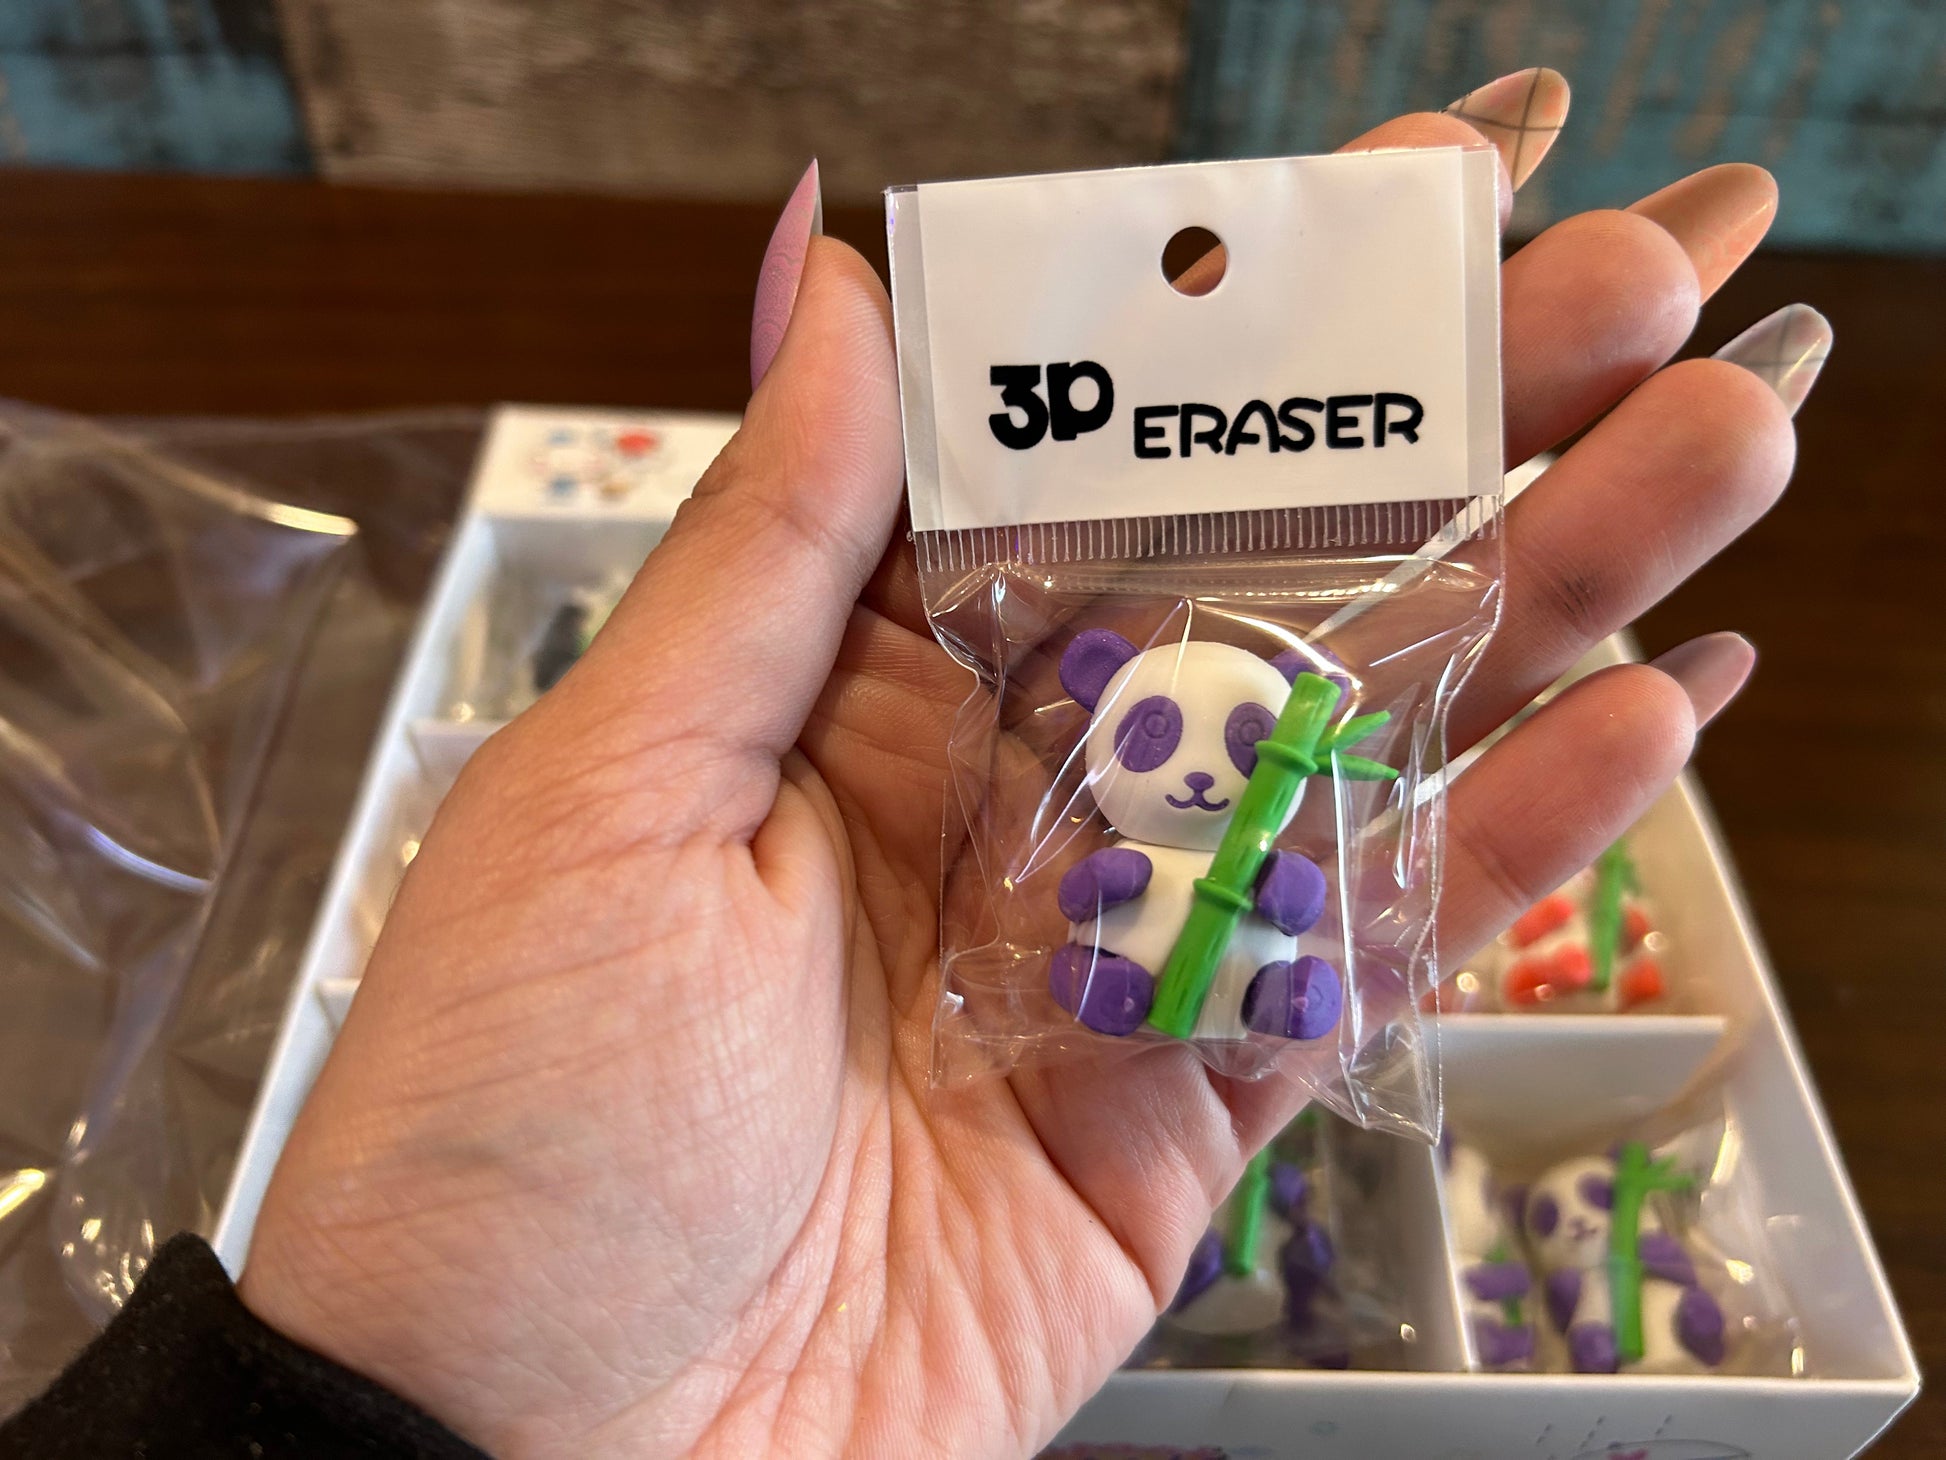 Panda Eraser